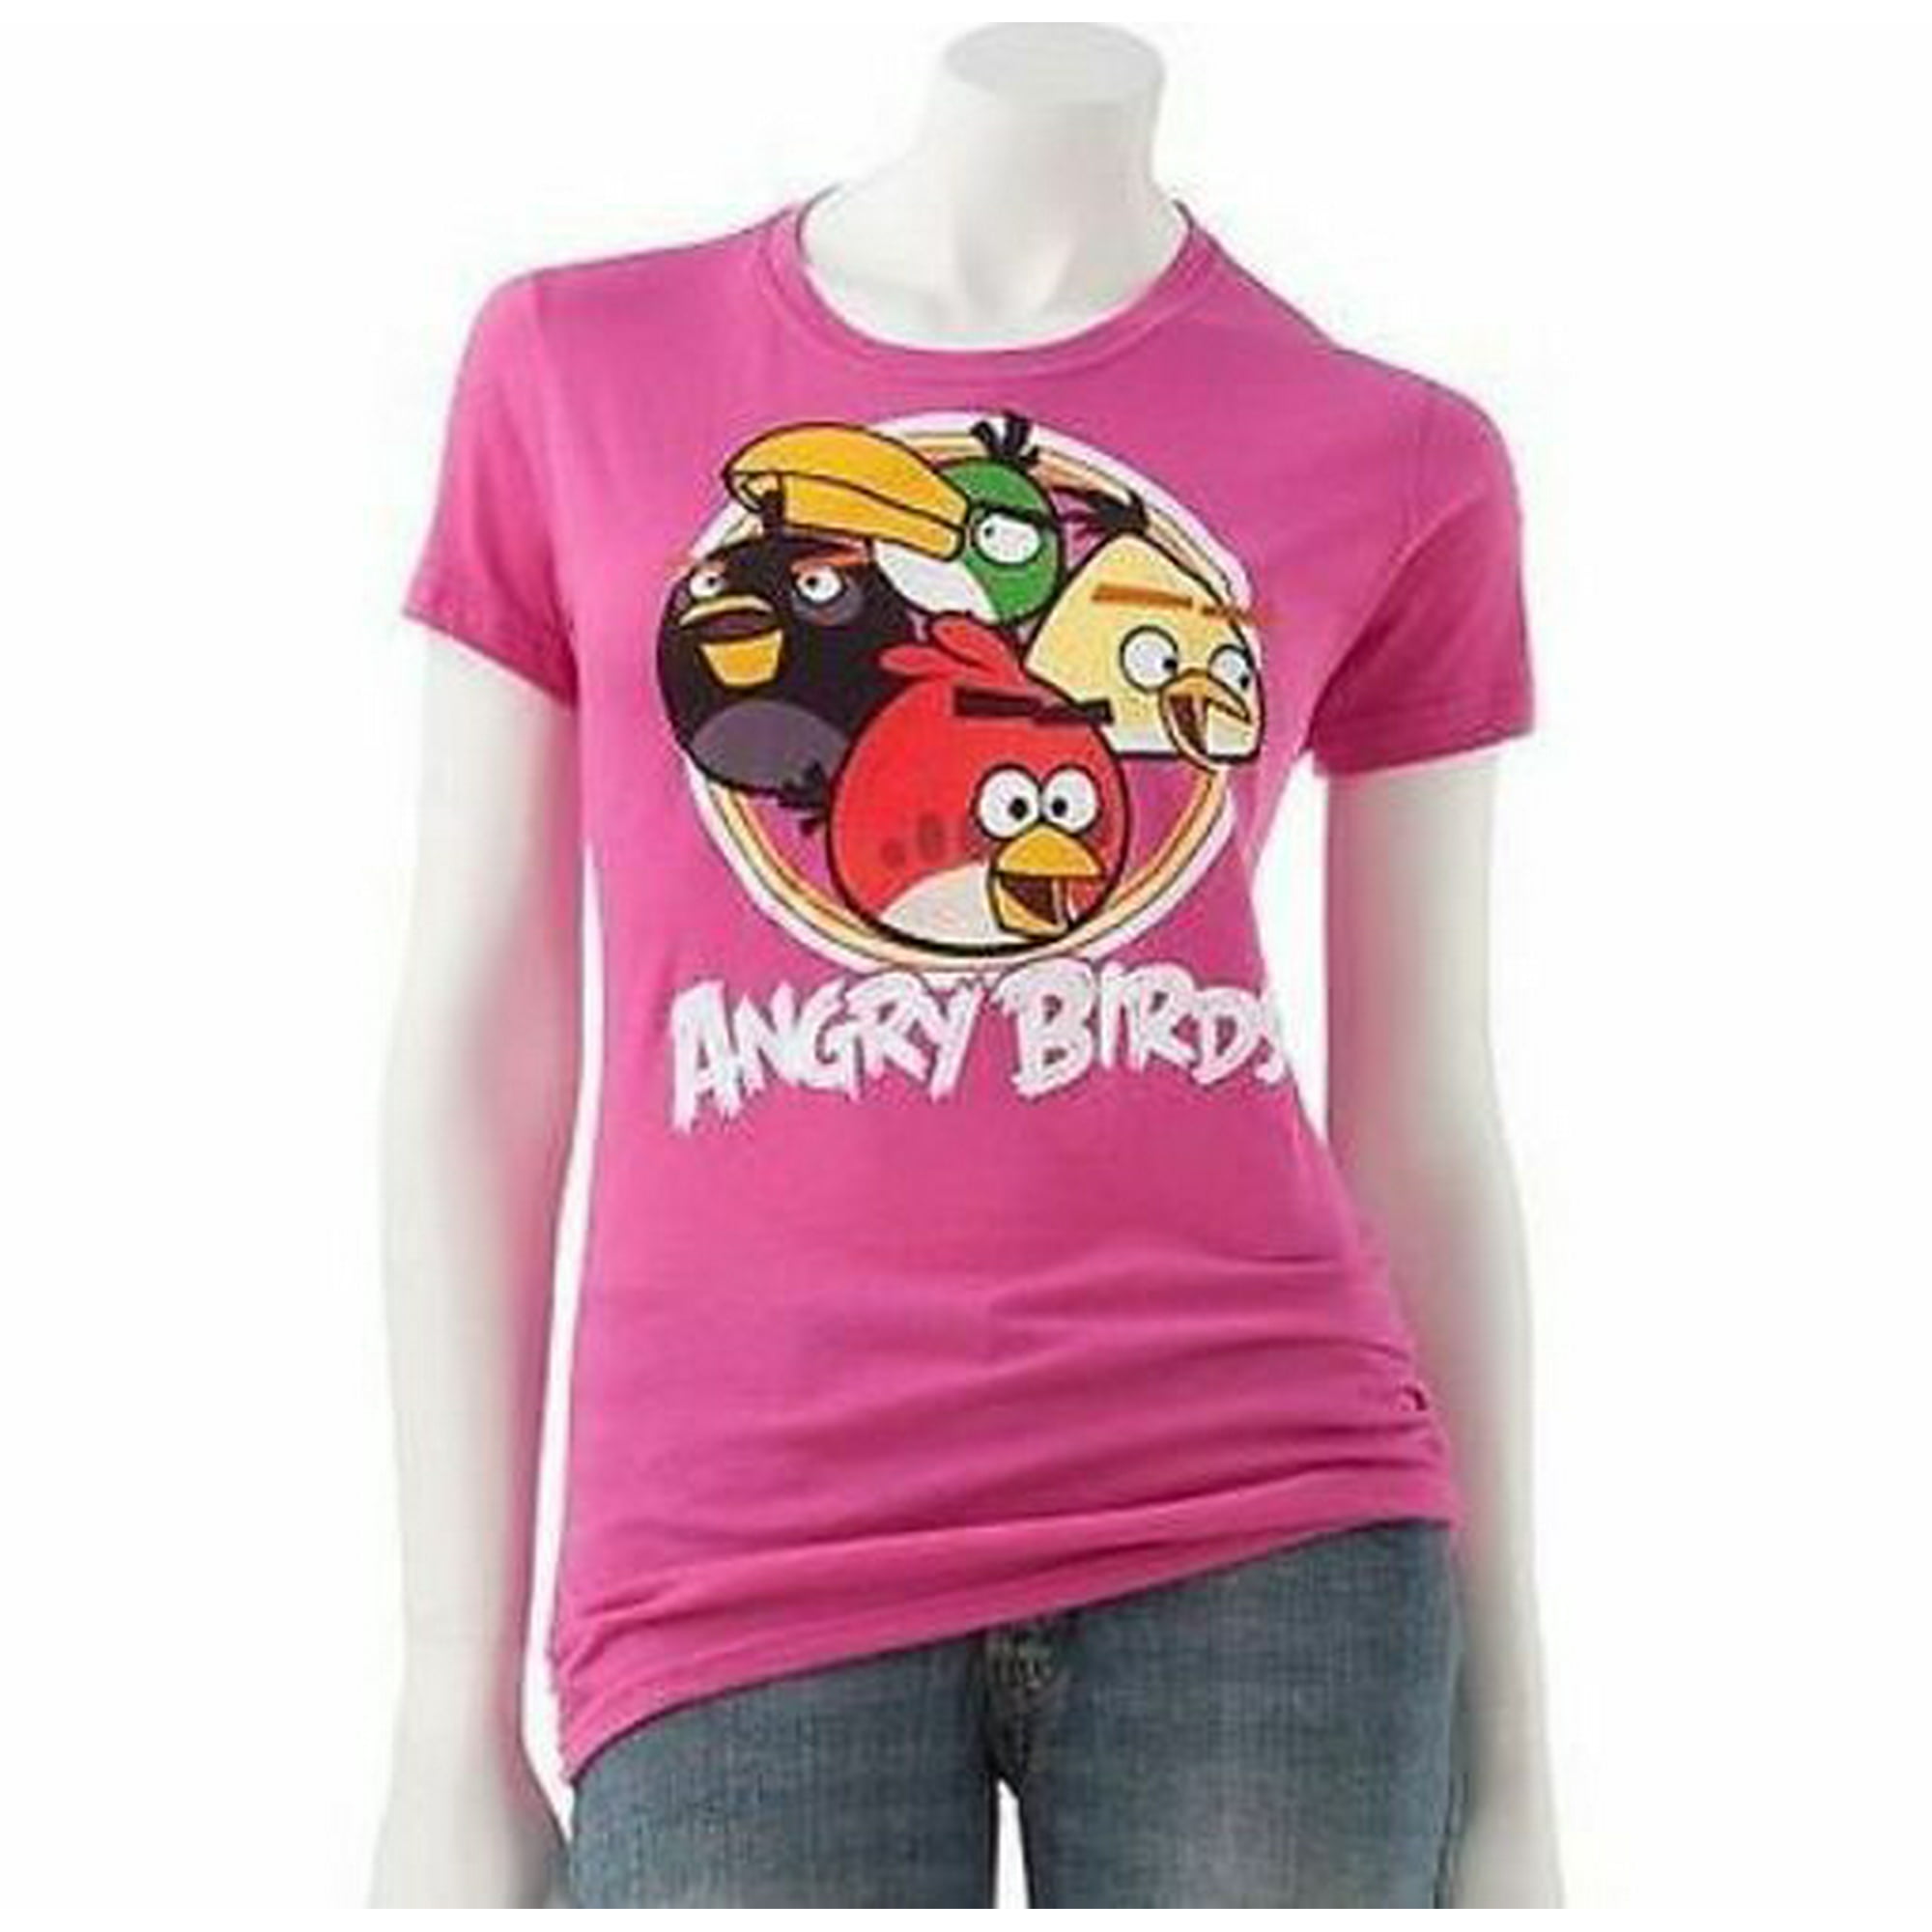 Angry Birds Short Sleeve T Shirt Women Teen Girl Juniors Size M 